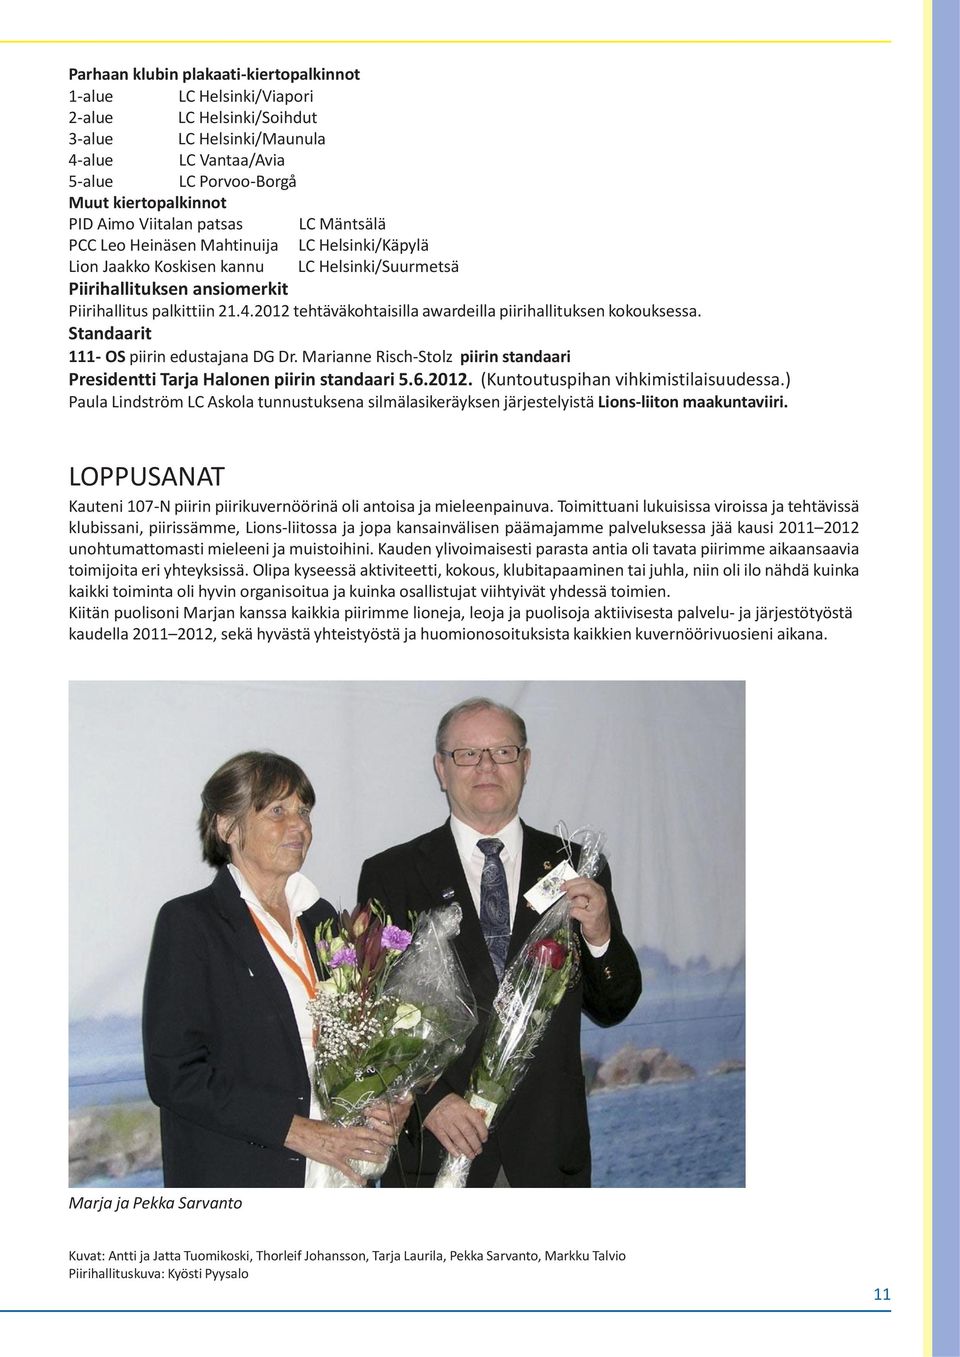 2012 tehtäväkohtaisilla awardeilla piirihallituksen kokouksessa. Standaarit 111- OS piirin edustajana DG Dr. Marianne Risch-Stolz piirin standaari Presidentti Tarja Halonen piirin standaari 5.6.2012. (Kuntoutuspihan vihkimistilaisuudessa.